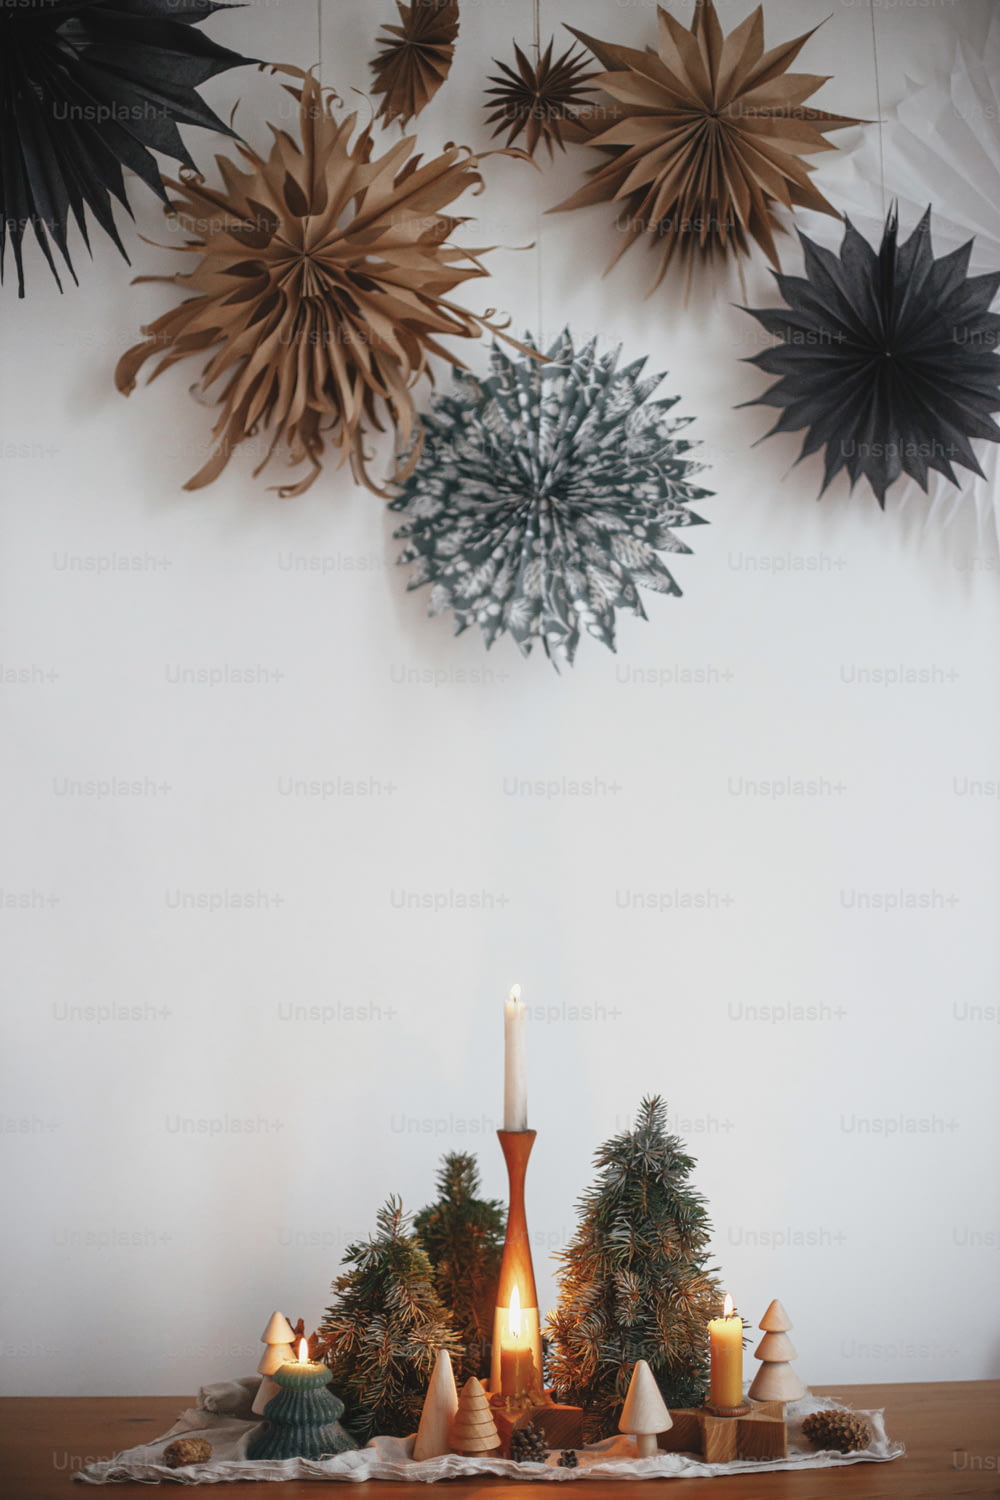 Stilvolle Weihnachtskerzen und Baumdekorationen auf Holztisch auf dem Hintergrund der weißen Wand mit großen Papiersternen. Handgemachtes Urlaubsdekor. Stimmungsvolle Winterzeit. Frohe Weihnachten!